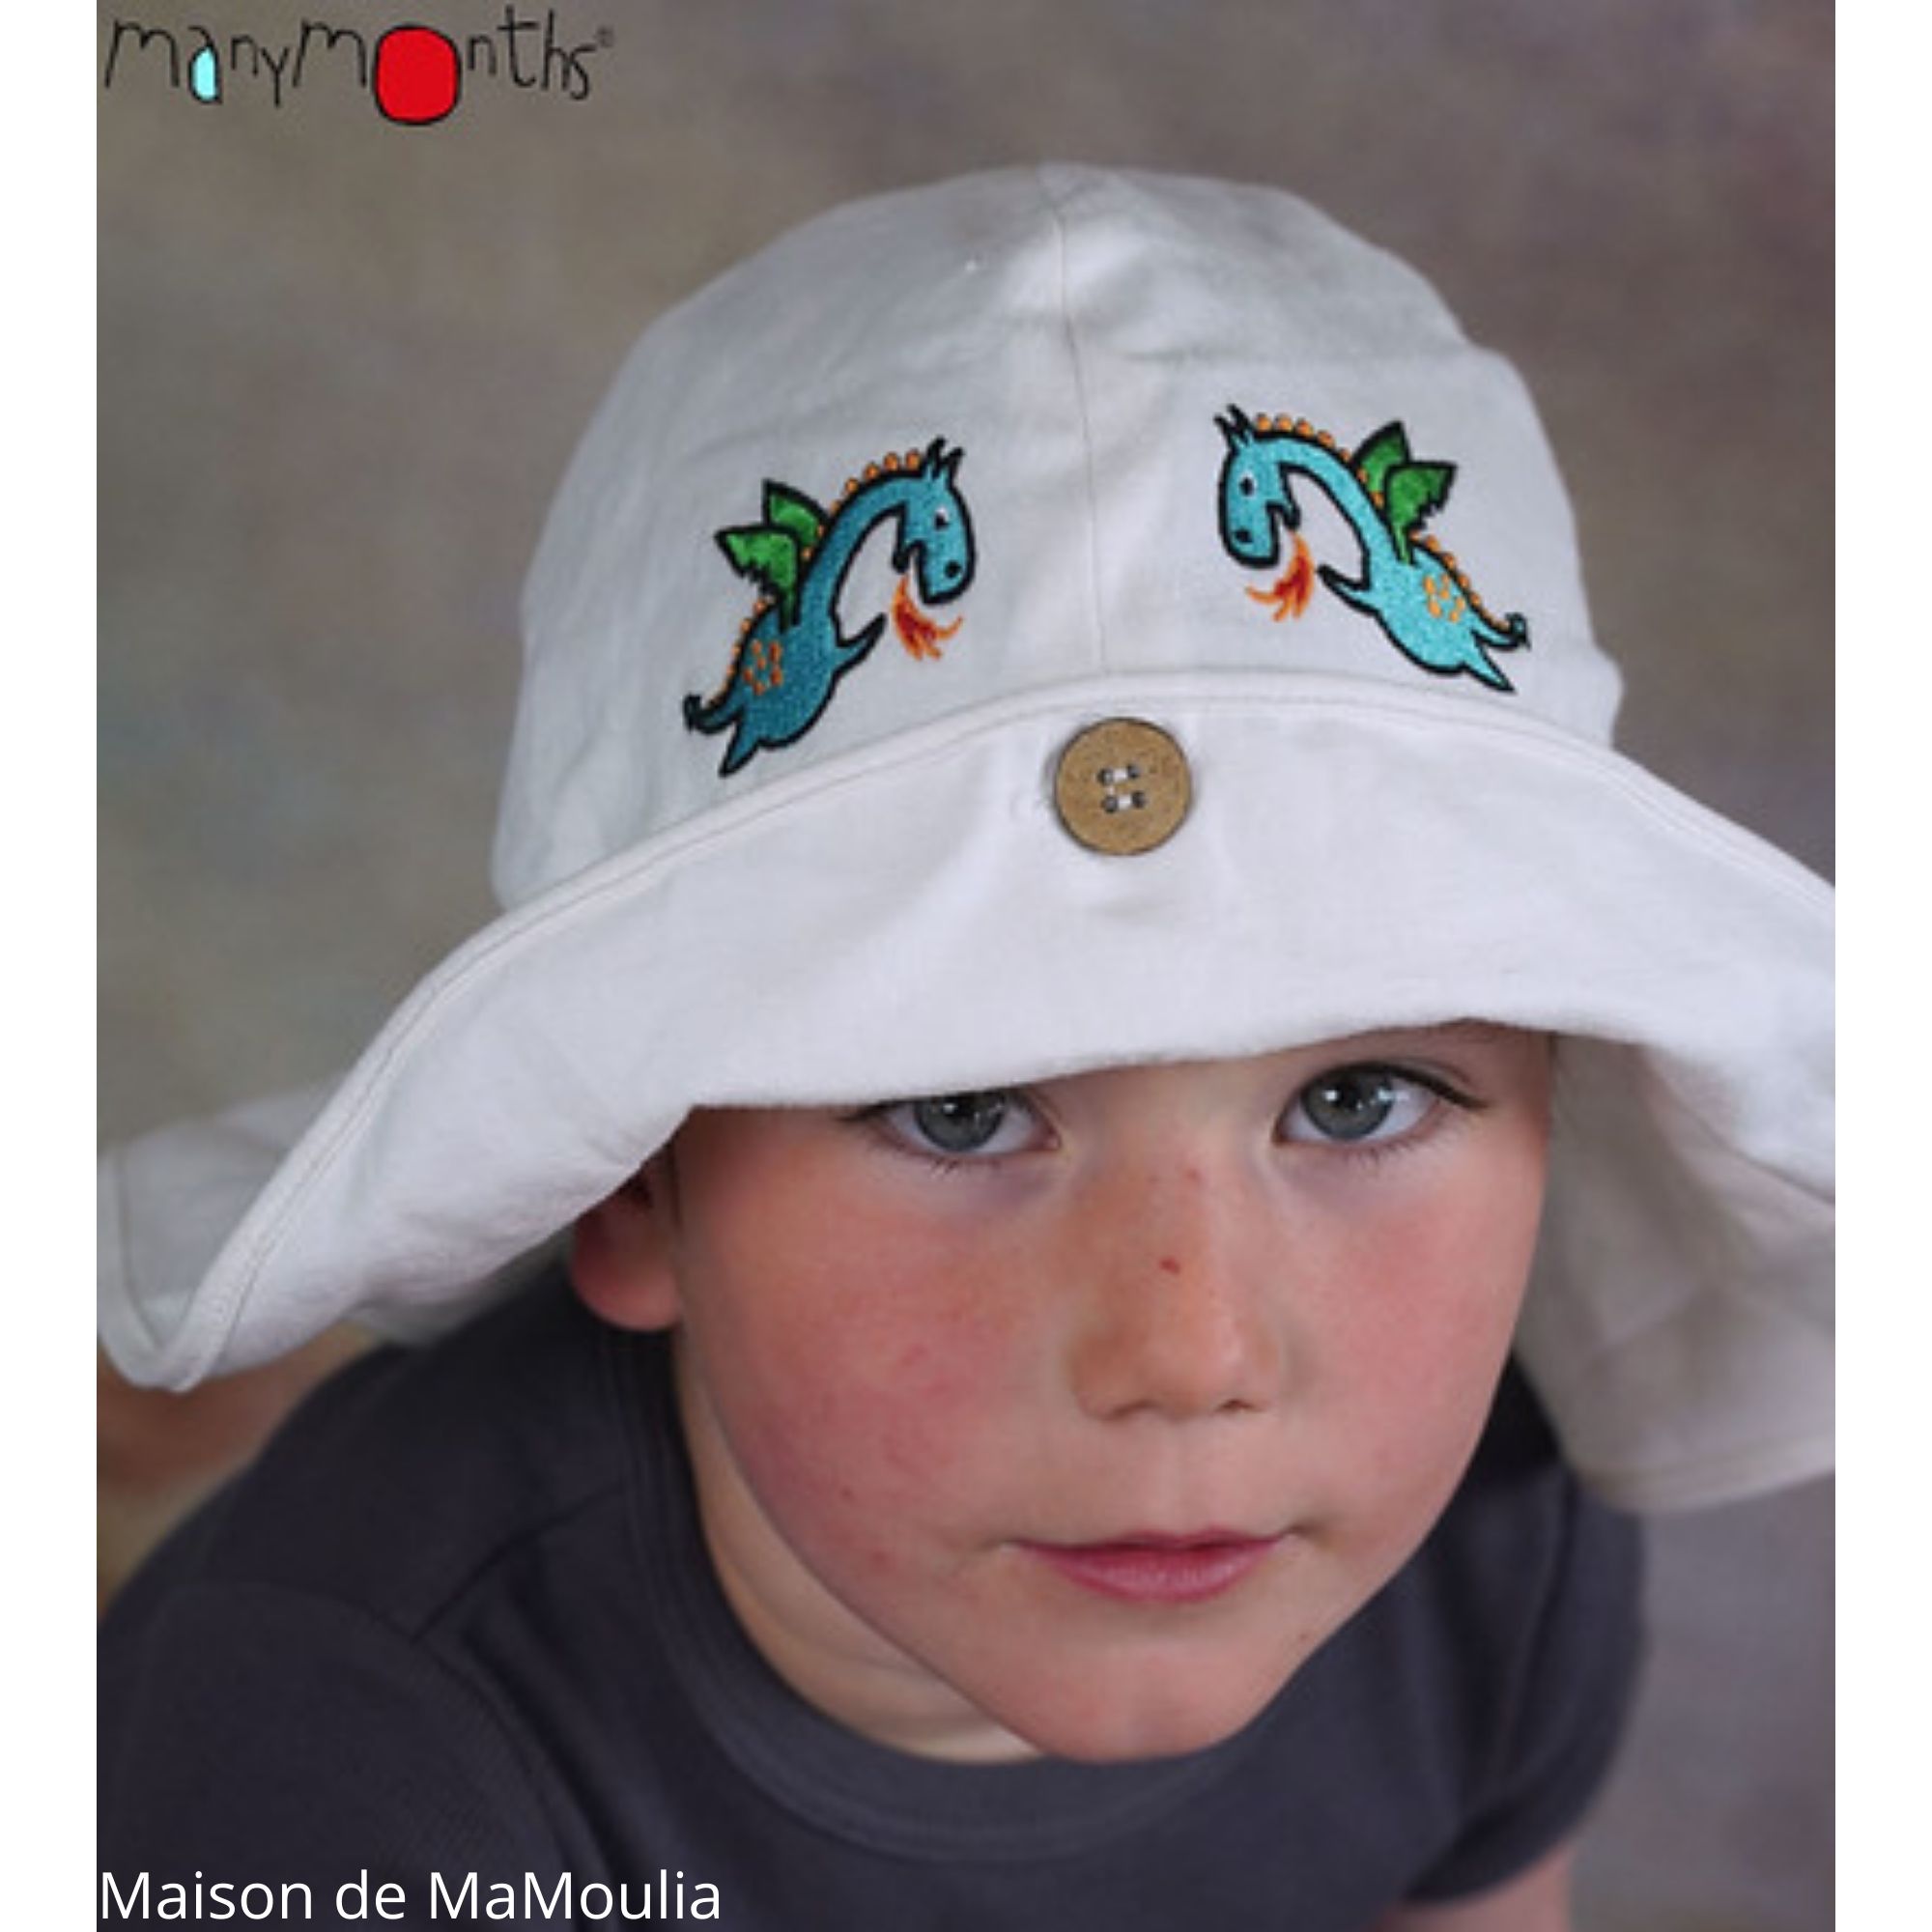 chapeau-ete_soleil-ajustable-evolutif-bebe-enfant-coton-bio-chanvre-manymonths-babyidea-maison-de-mamoulia-original-natural-ecru-blanc-dragon-tshirt